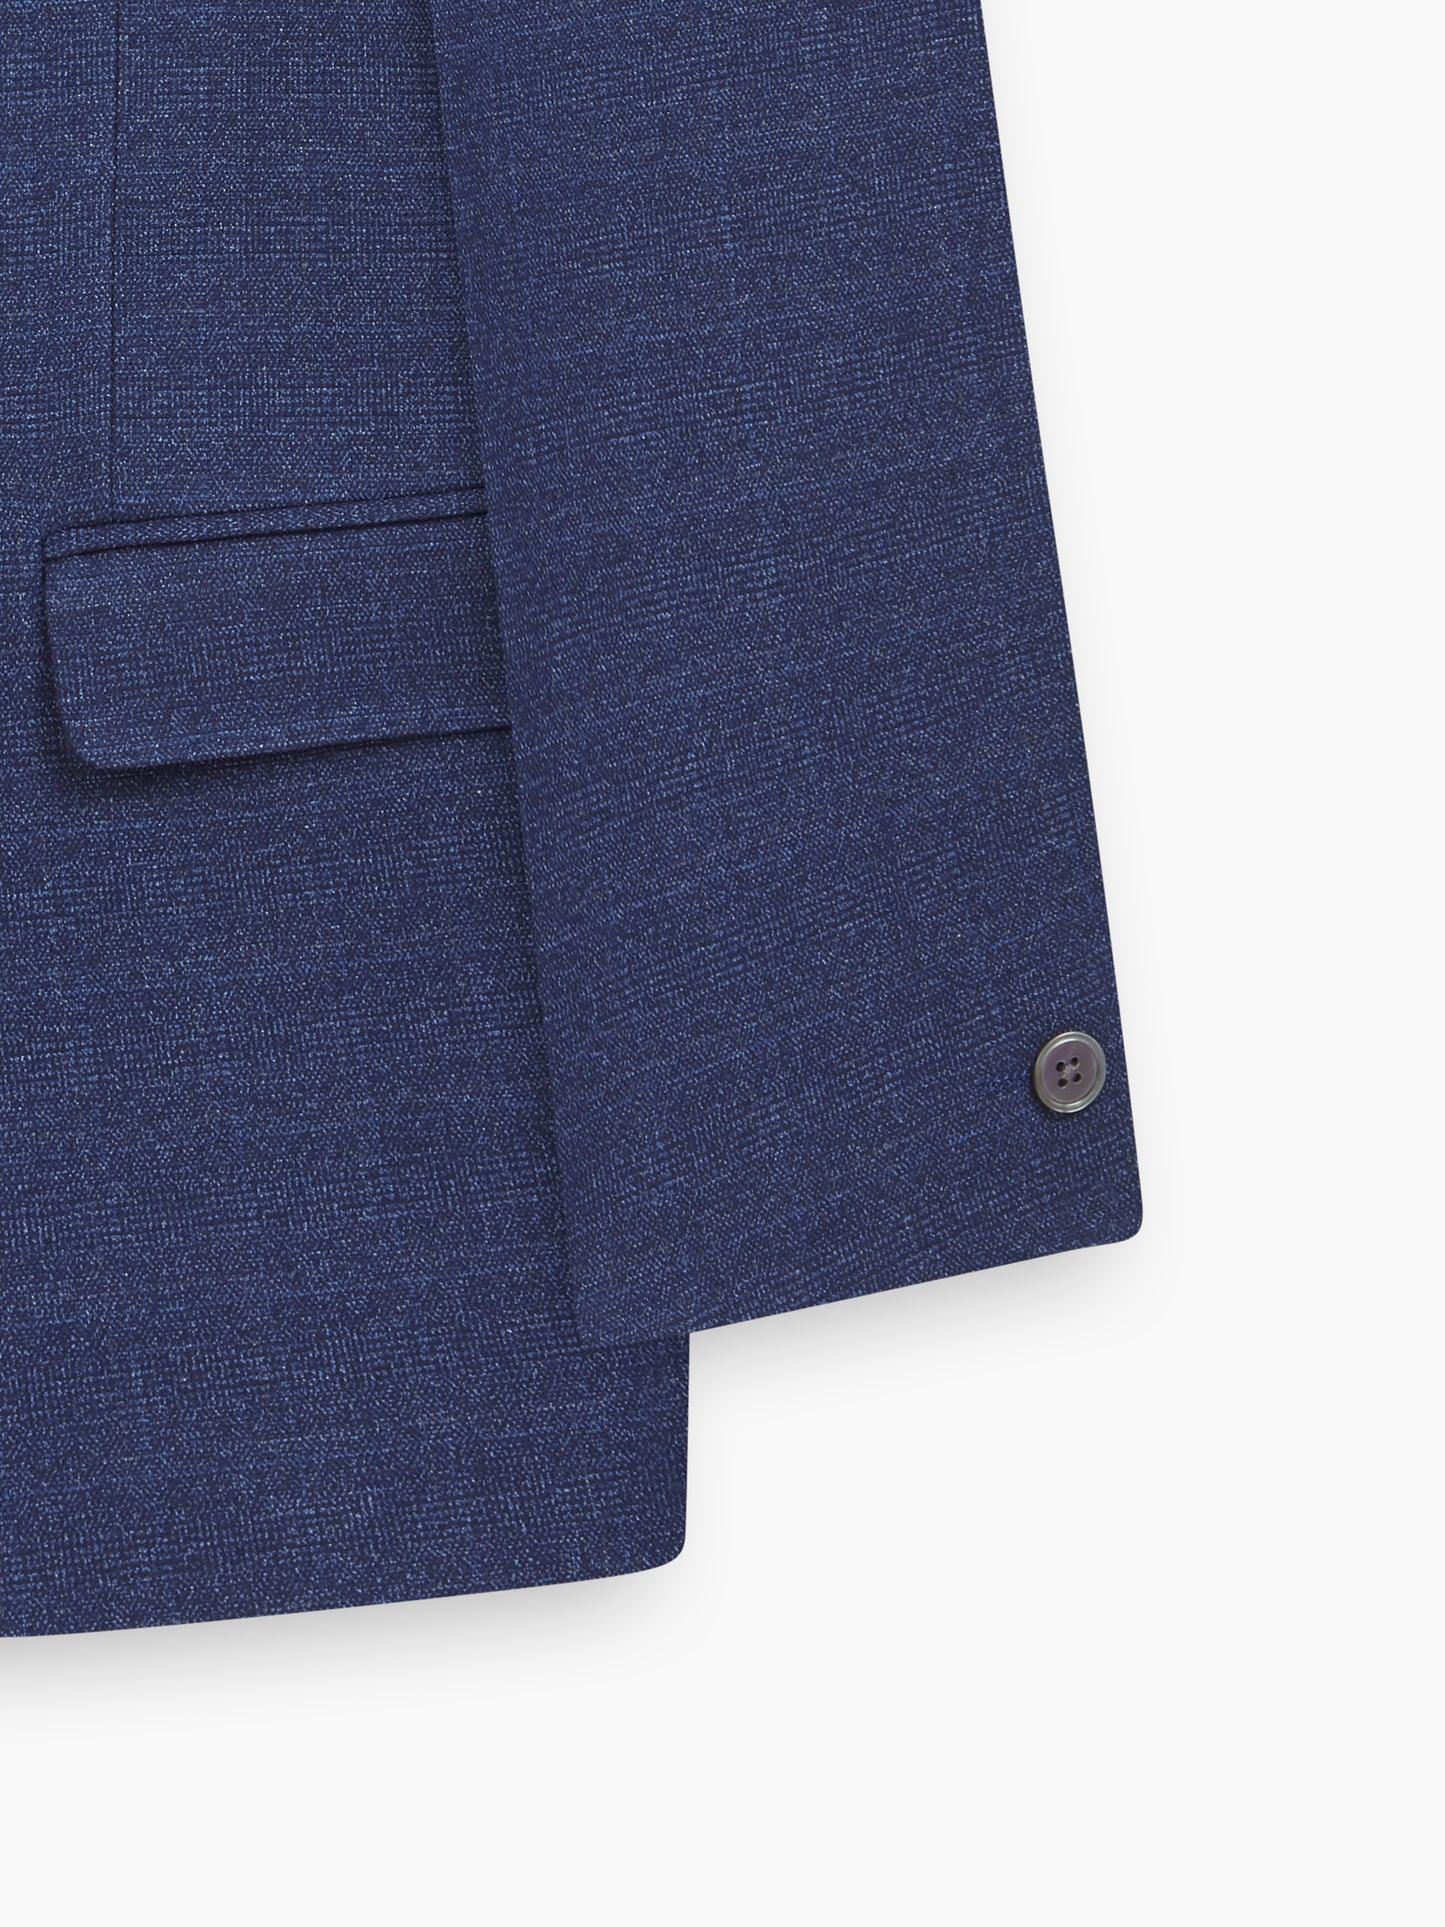 Oasis Navy Blue Semi Plain Jacket